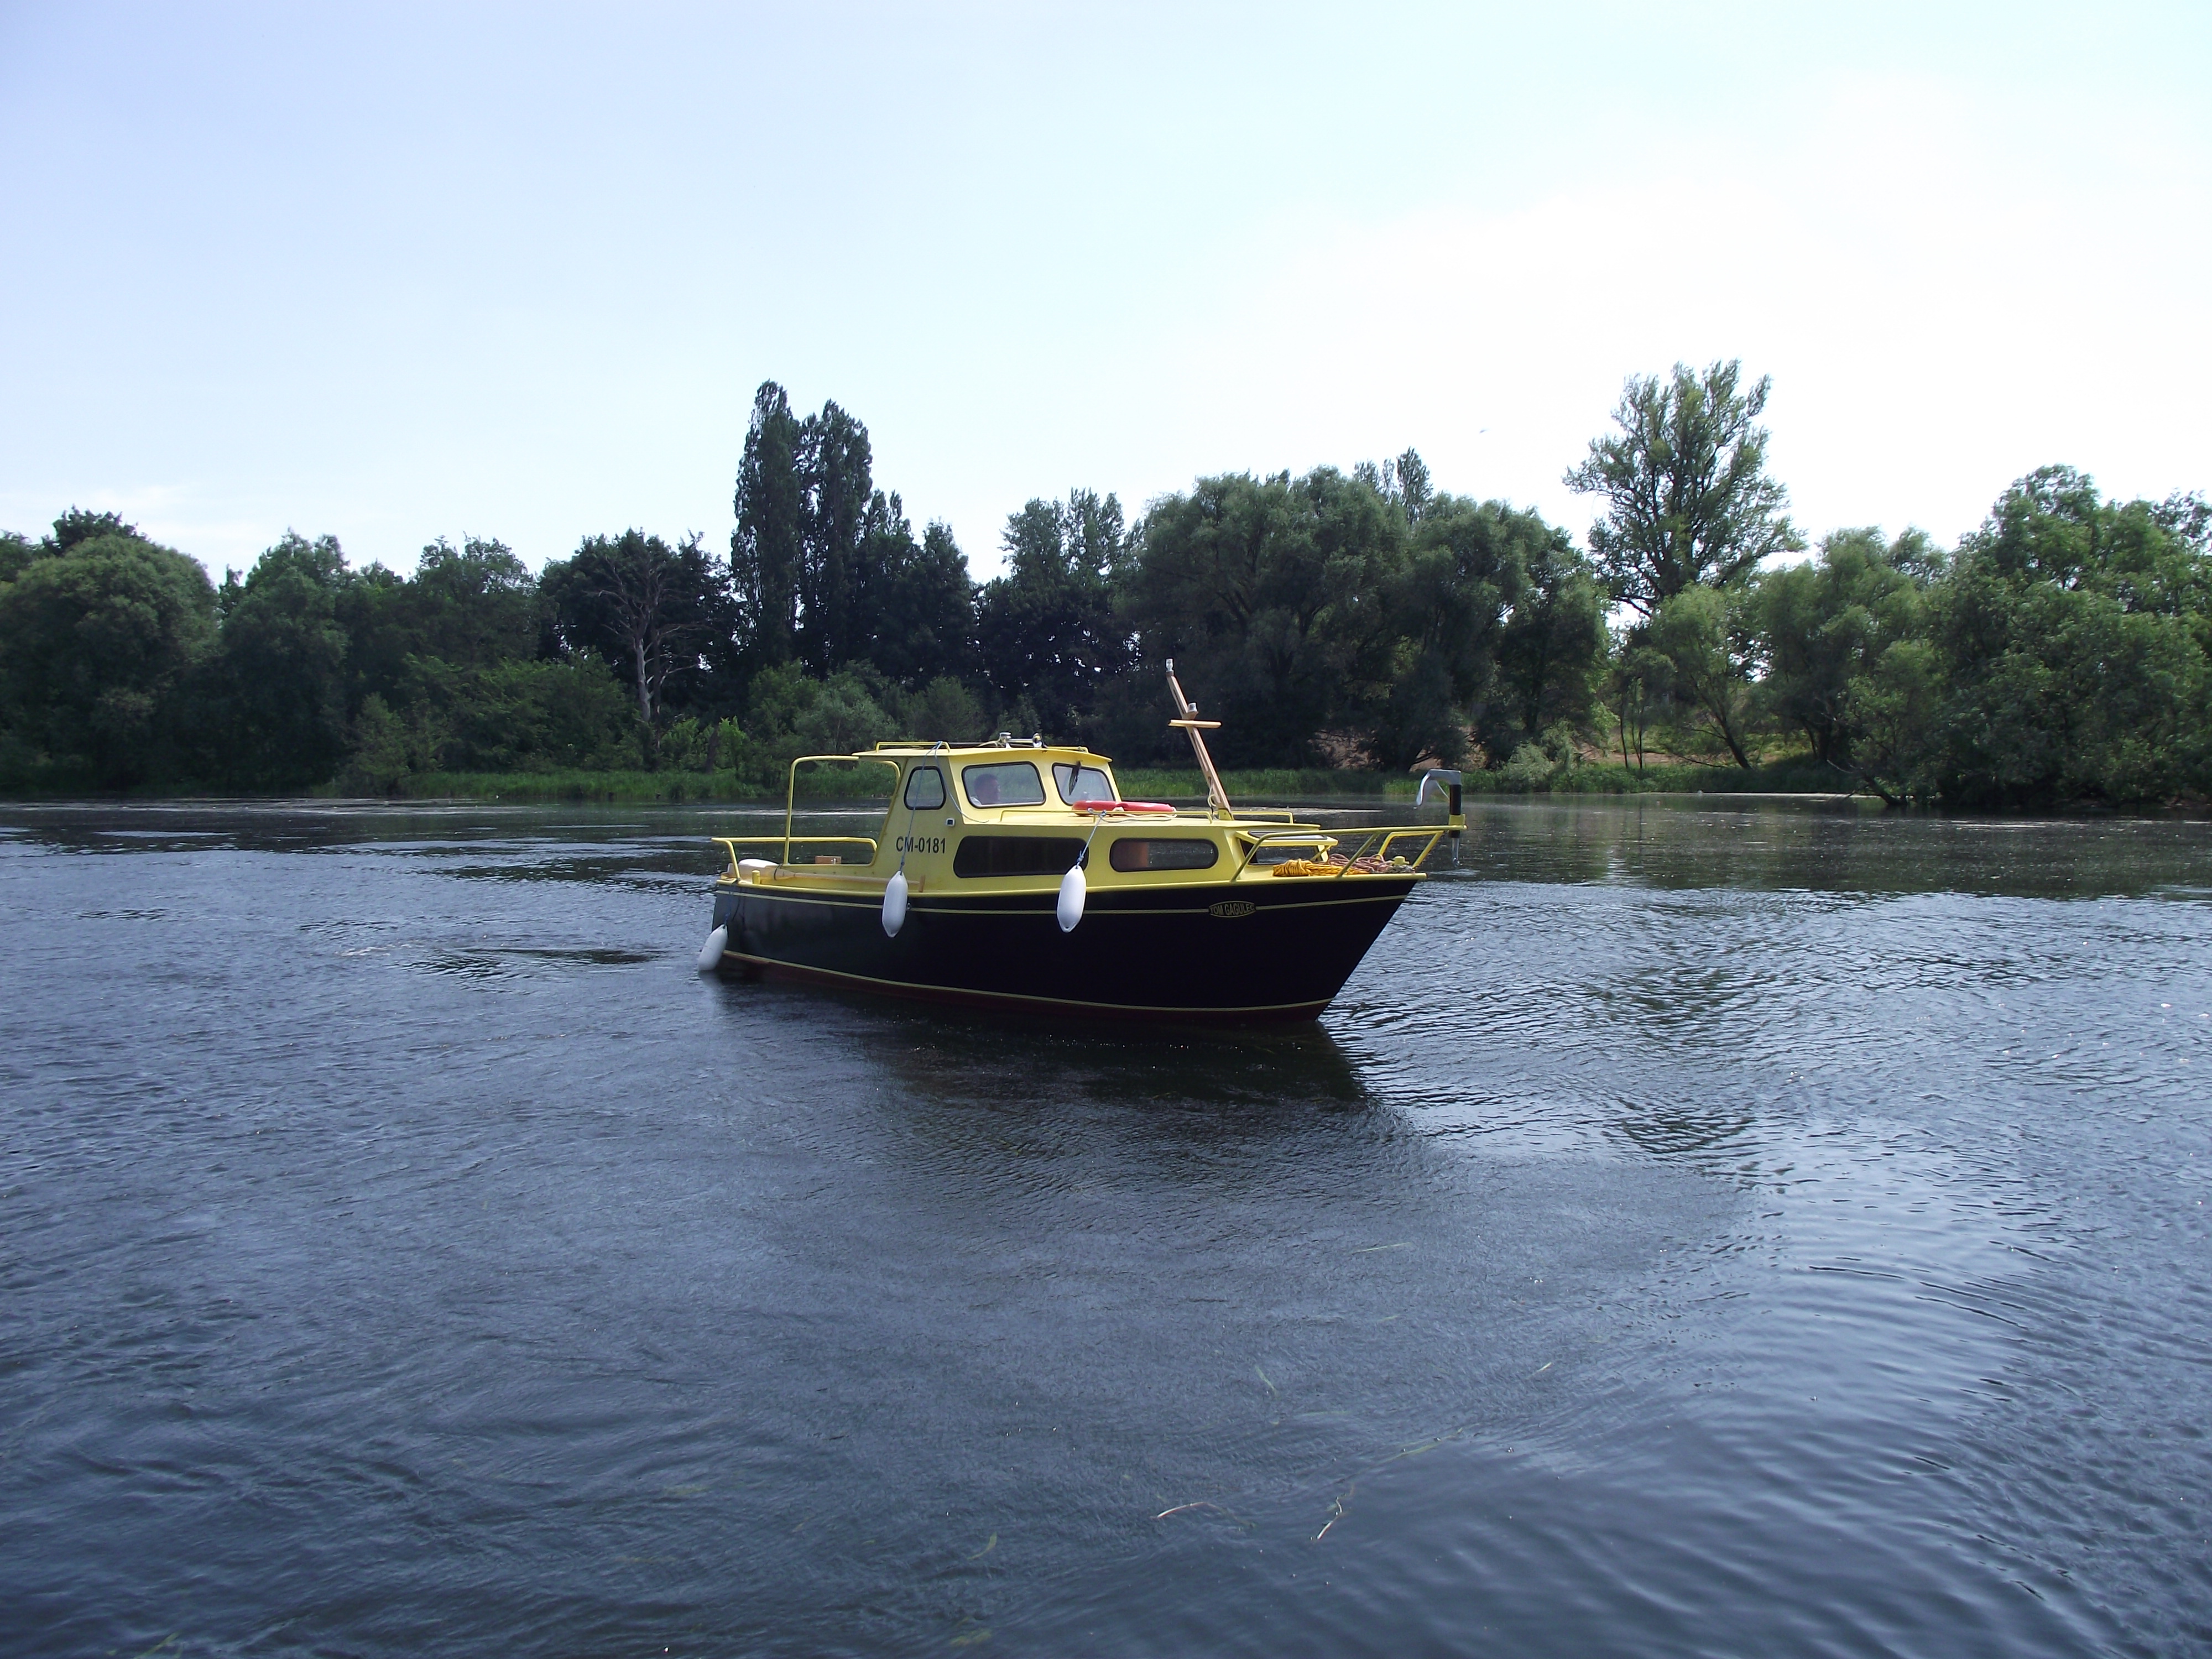 Yacht motorowy na rzece Brda w Bydgoszczy